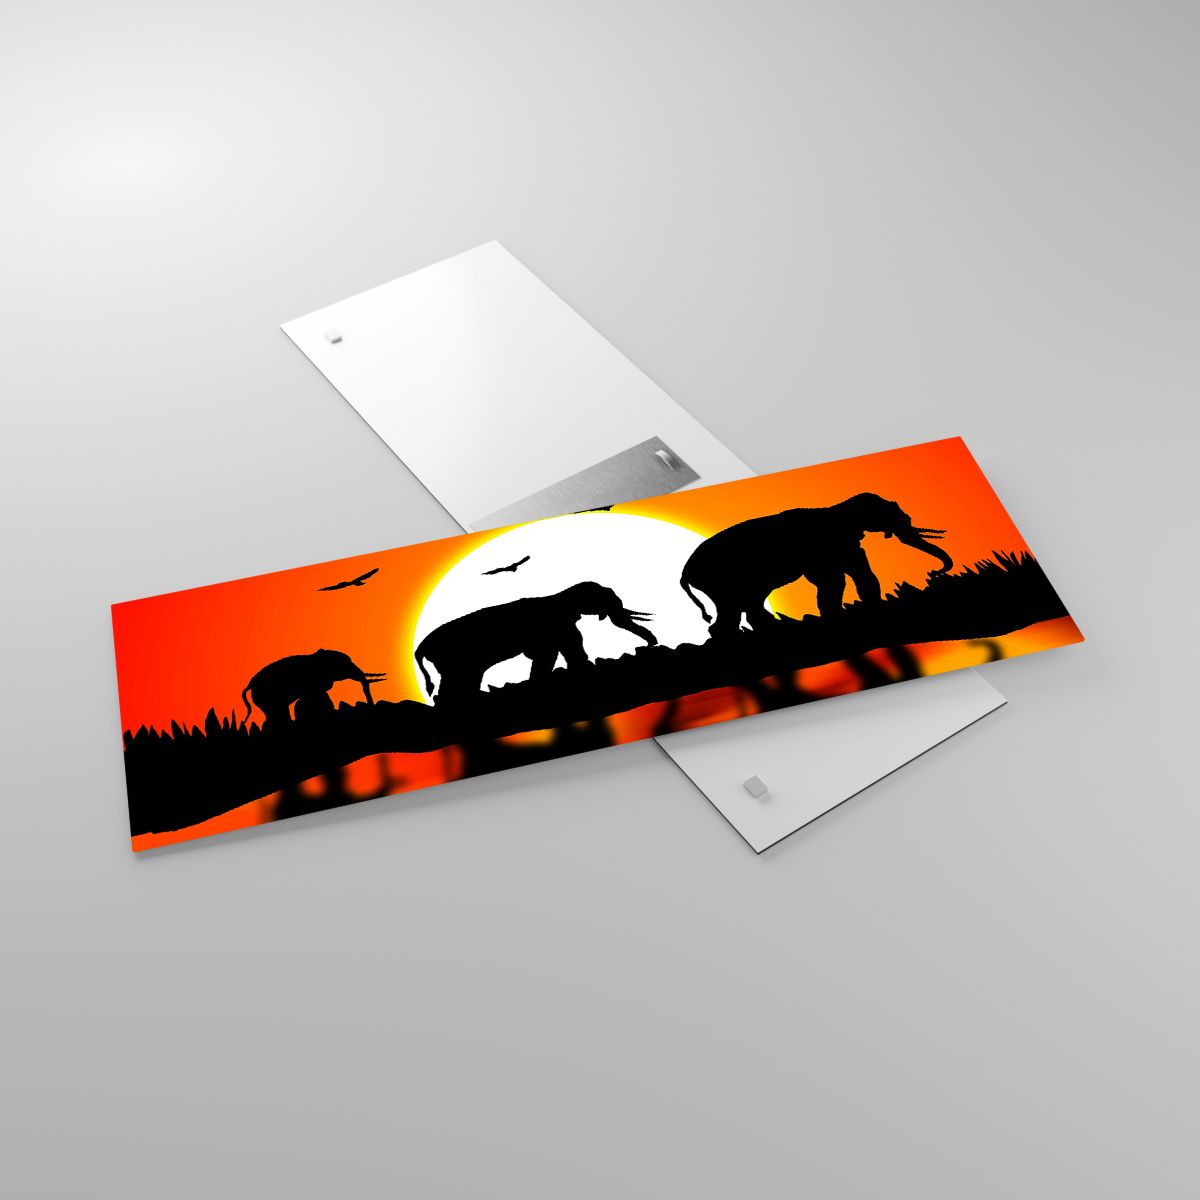 Glasbild Tiere, Glasbild Afrika, Glasbild  Elefant, Glasbild Natur, Glasbild Der Sonnenuntergang